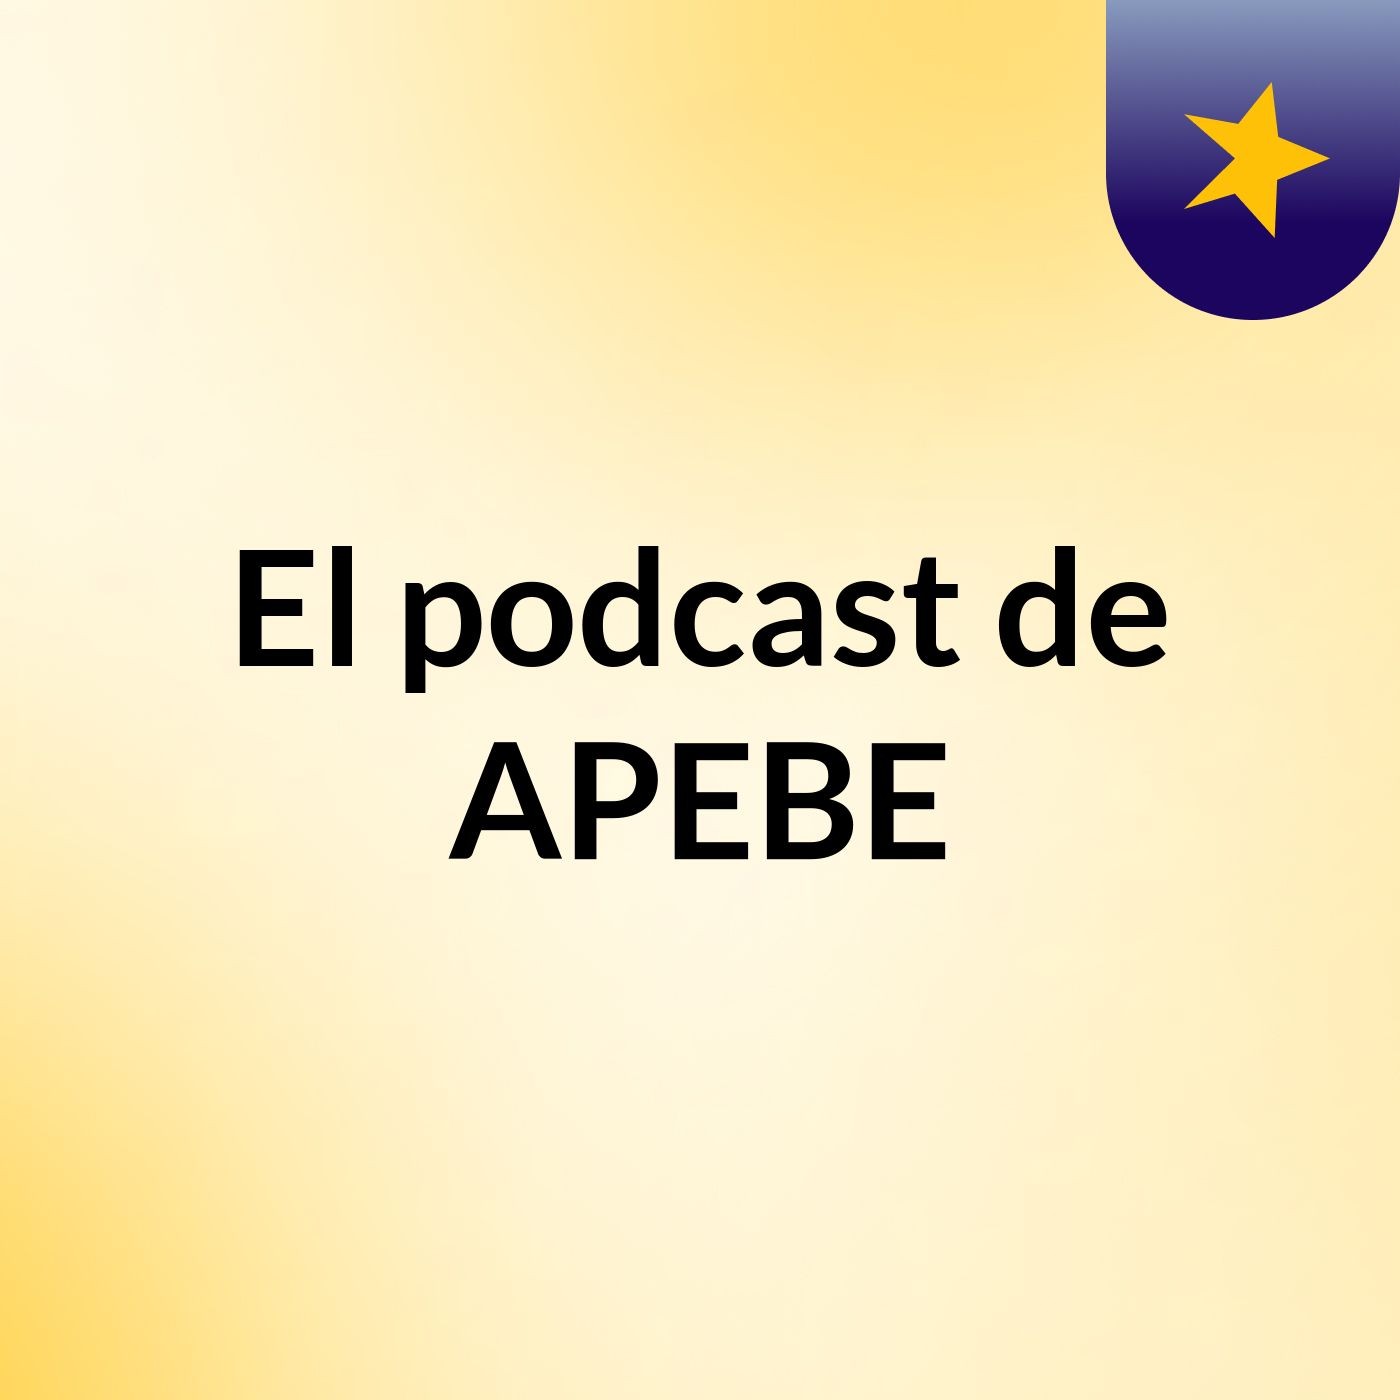 El podcast de APEBE